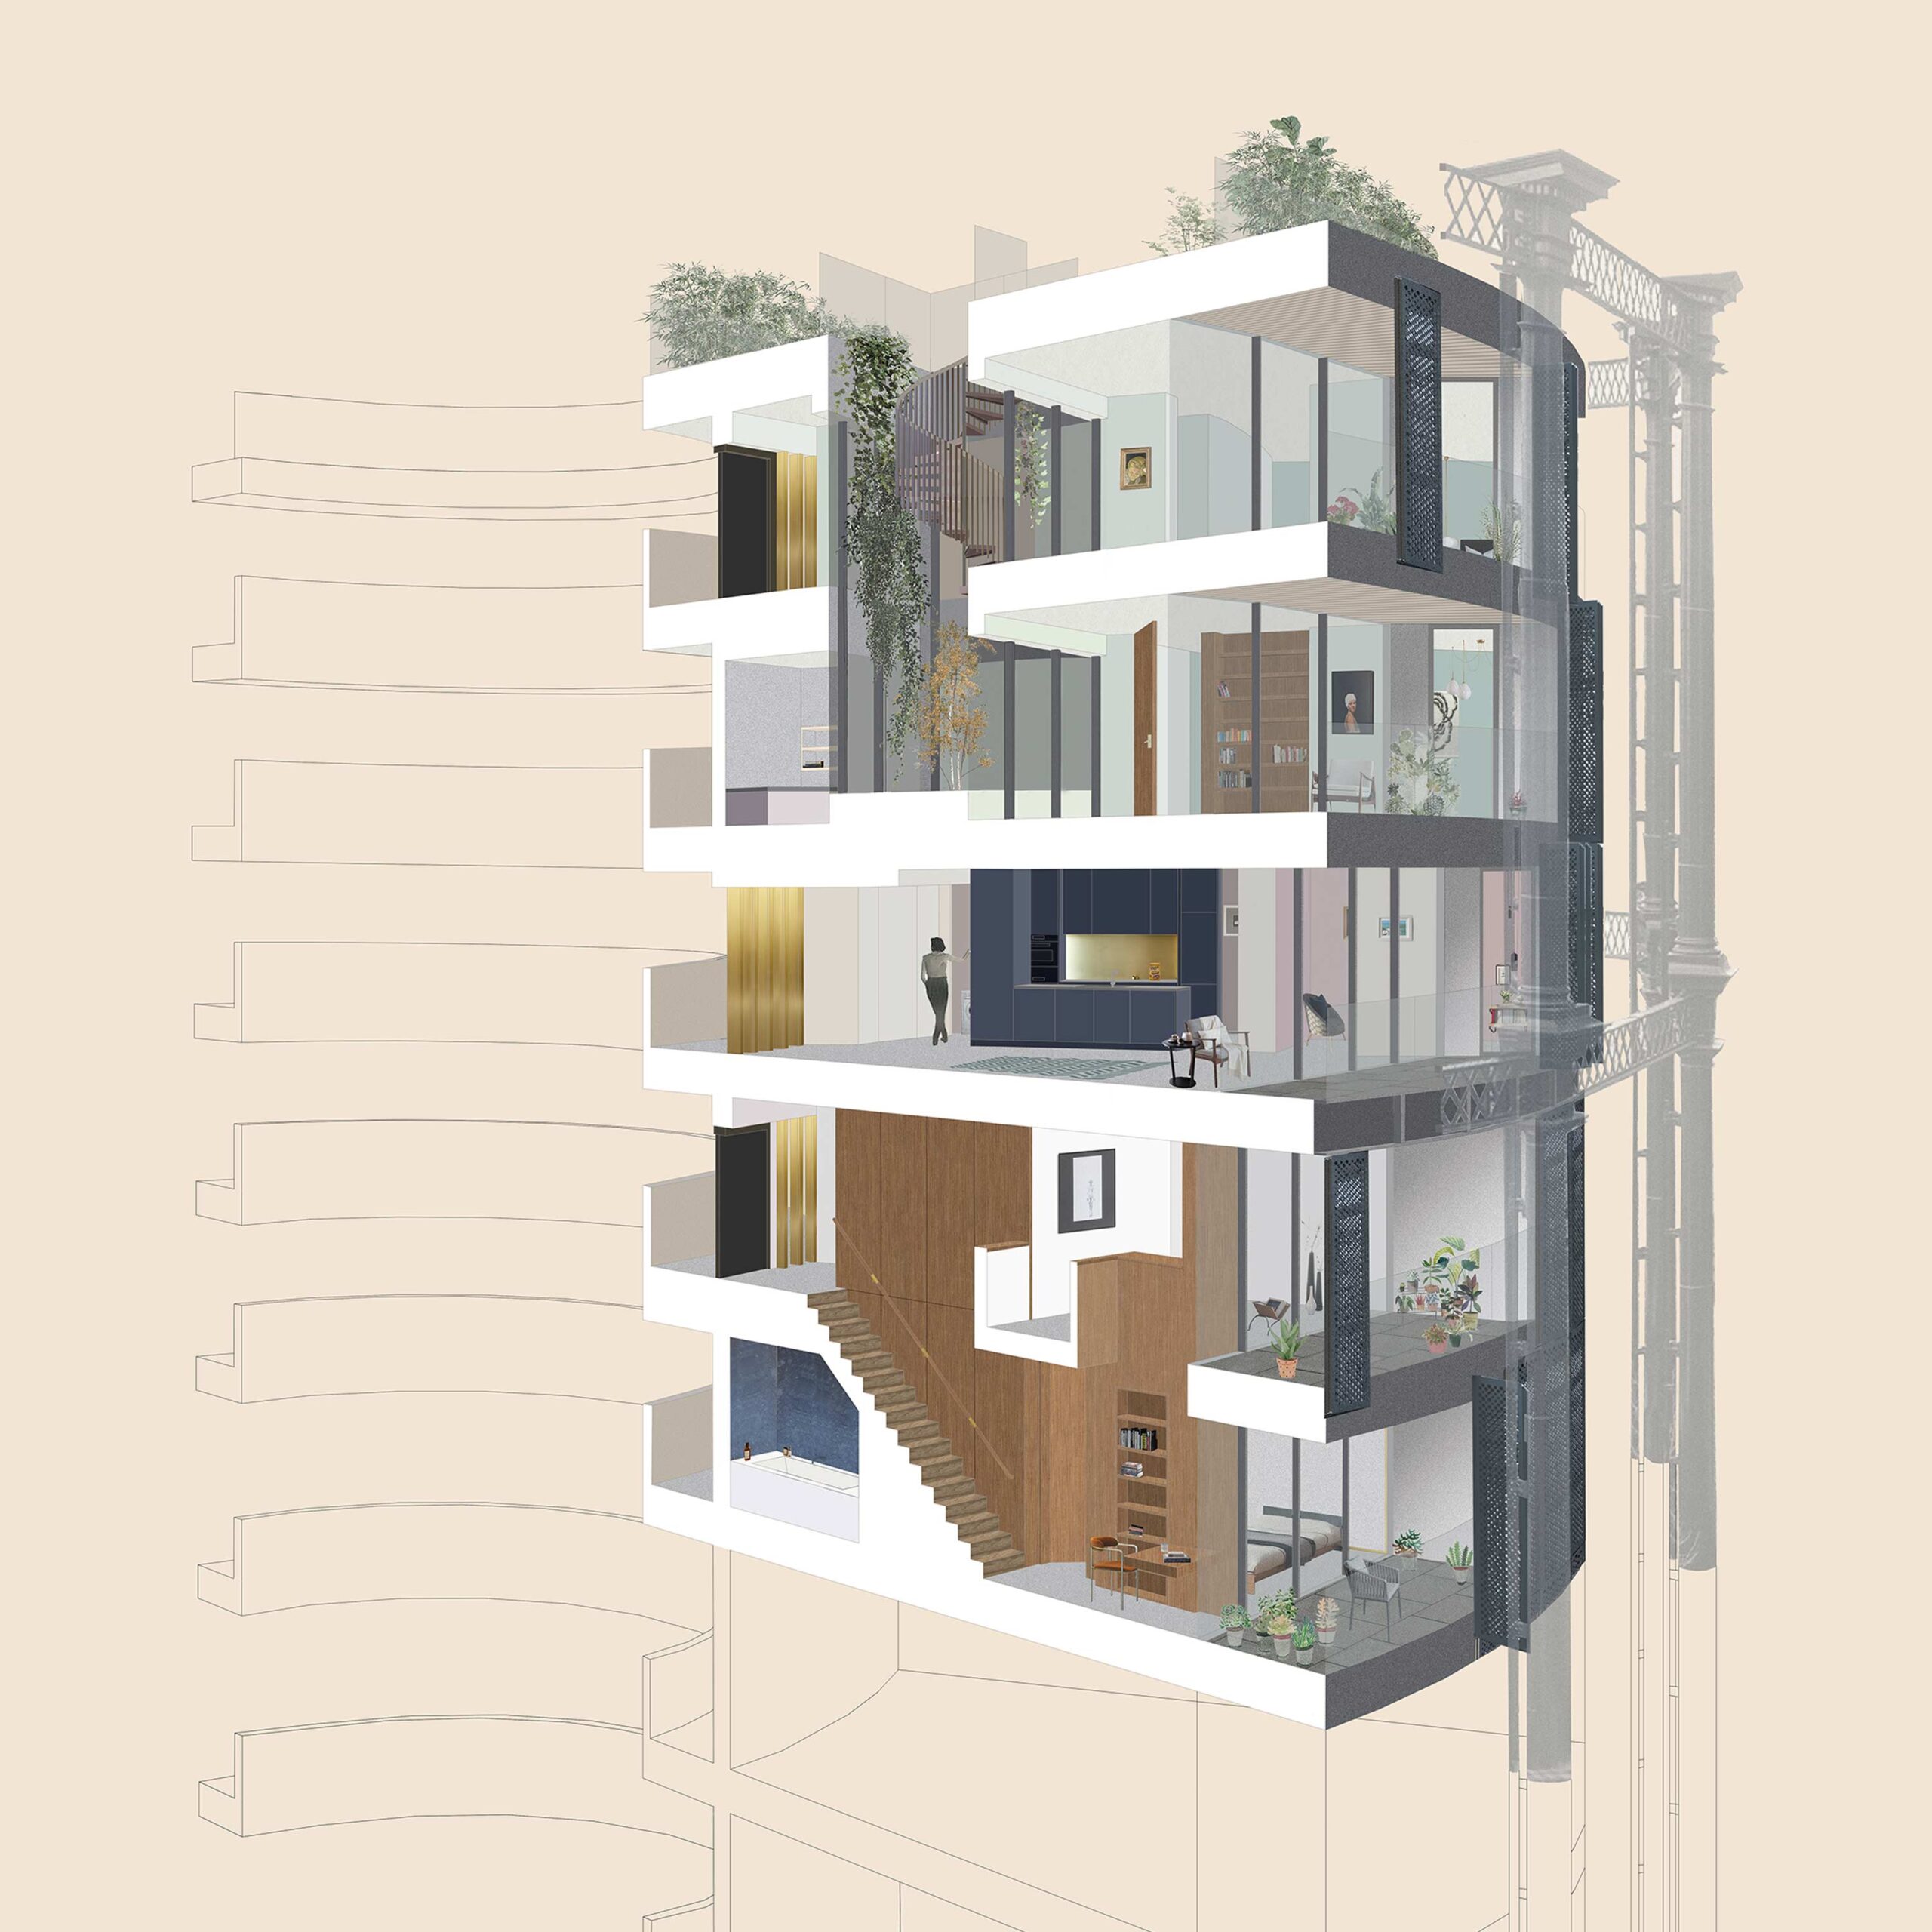 Sezione prospettica che illustra la divisione interna di appartamenti a piani individuali e doppi.